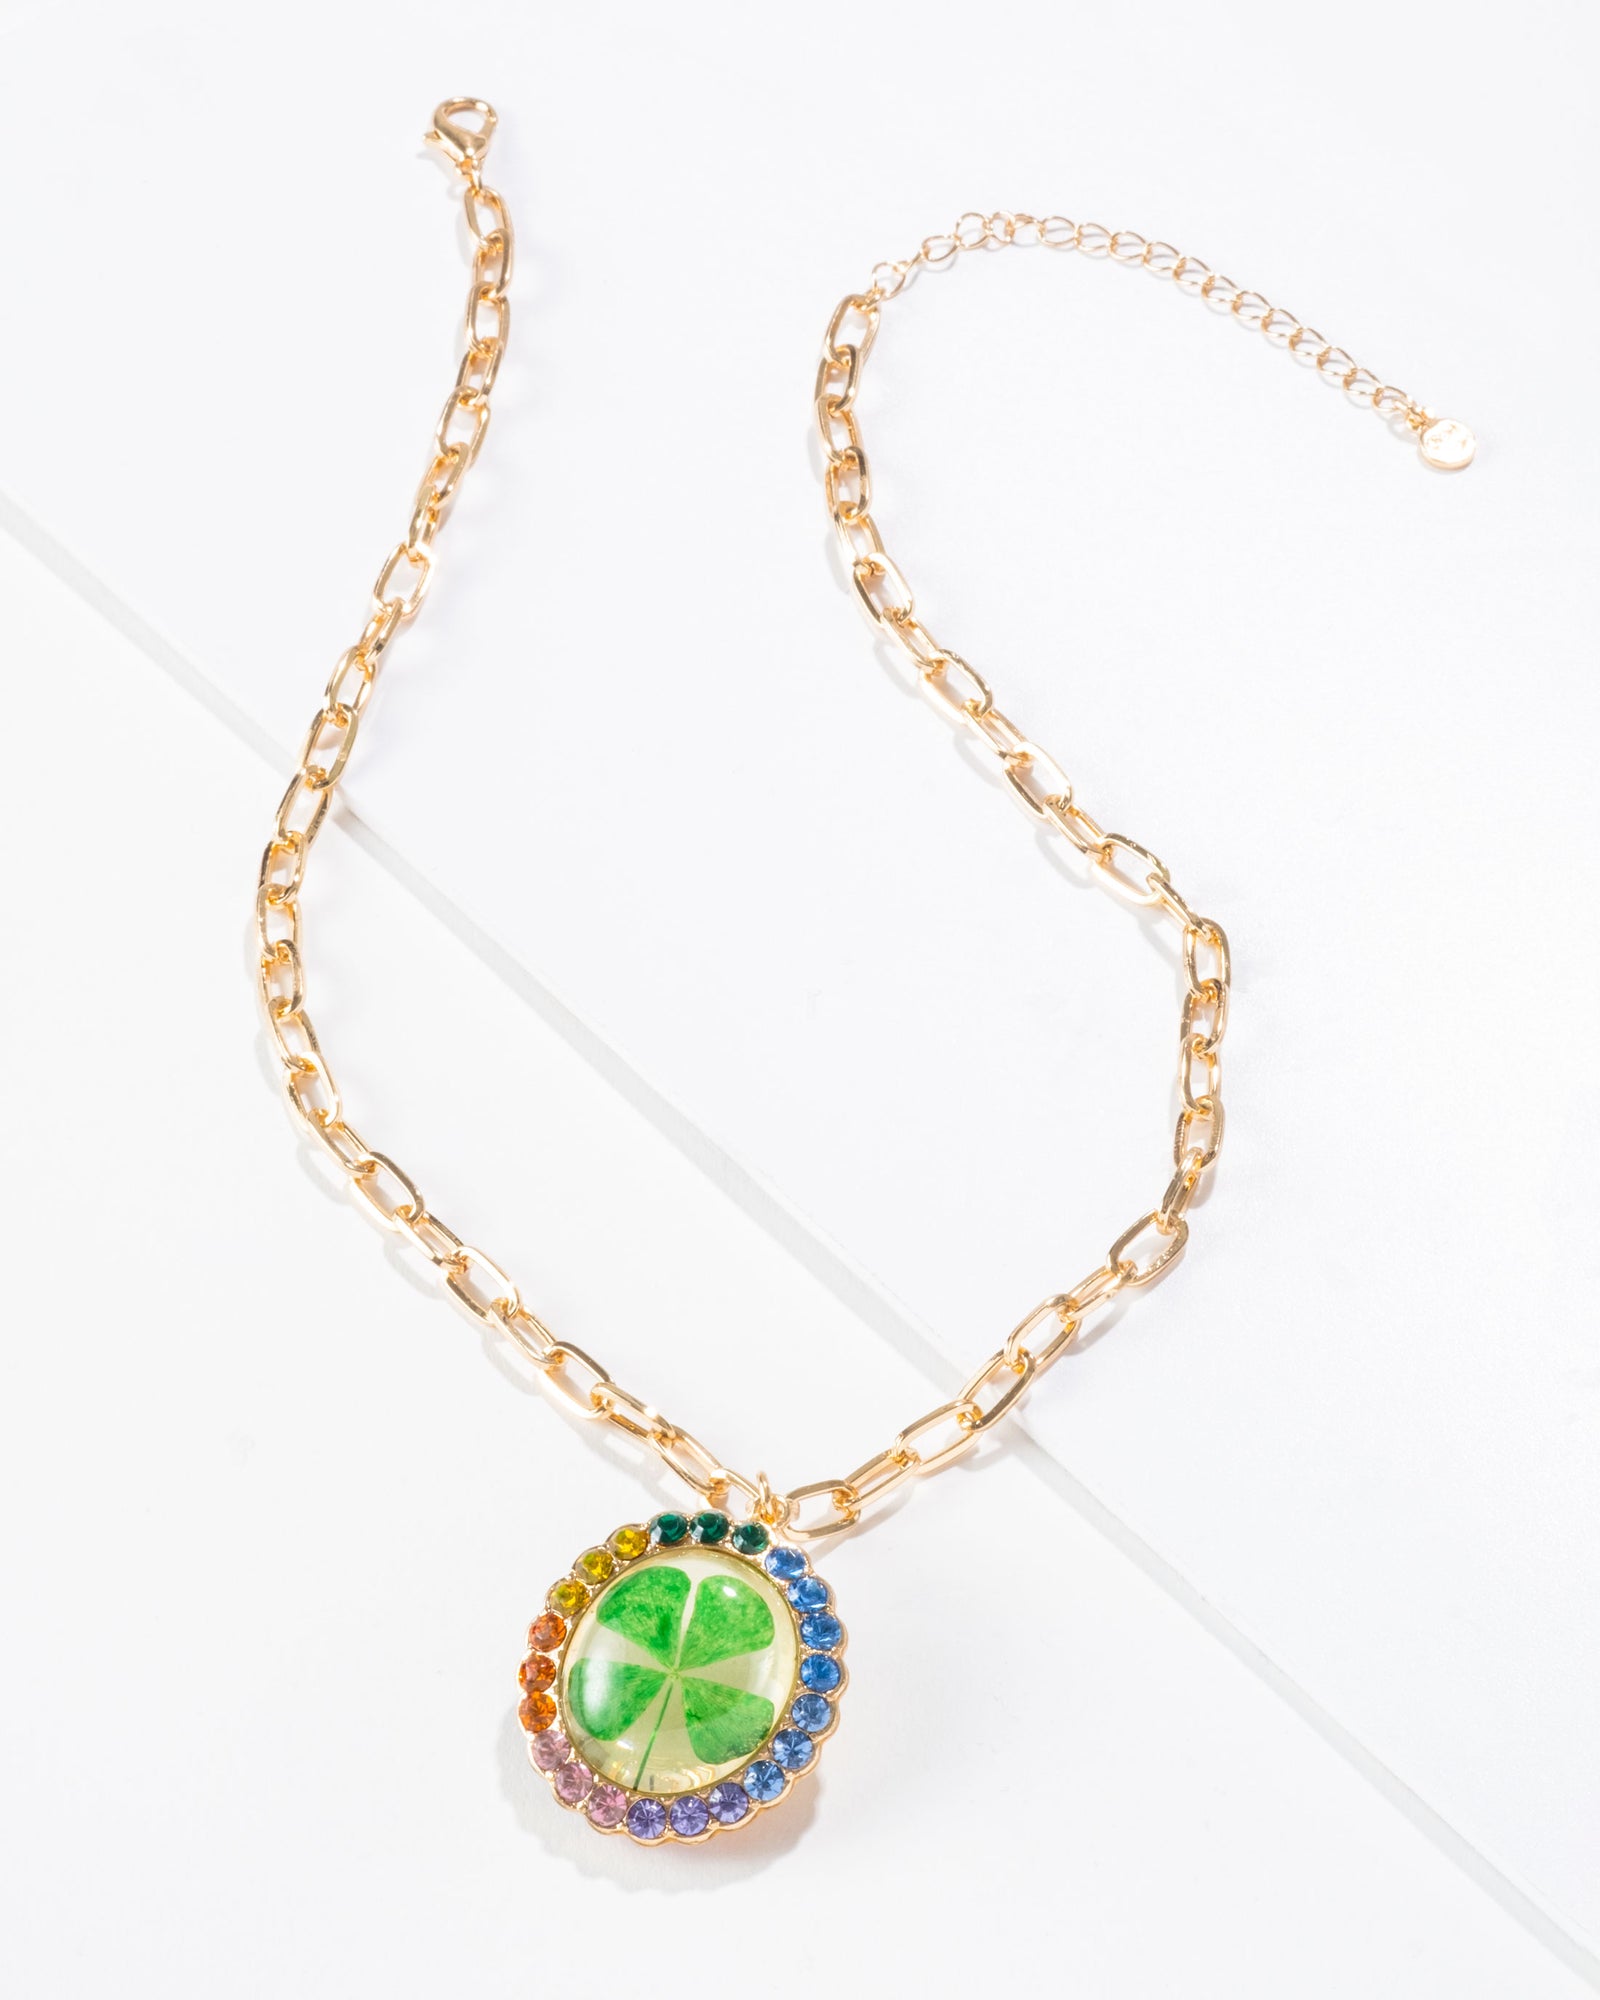 4-Leaf Clover Necklace – LaLisa